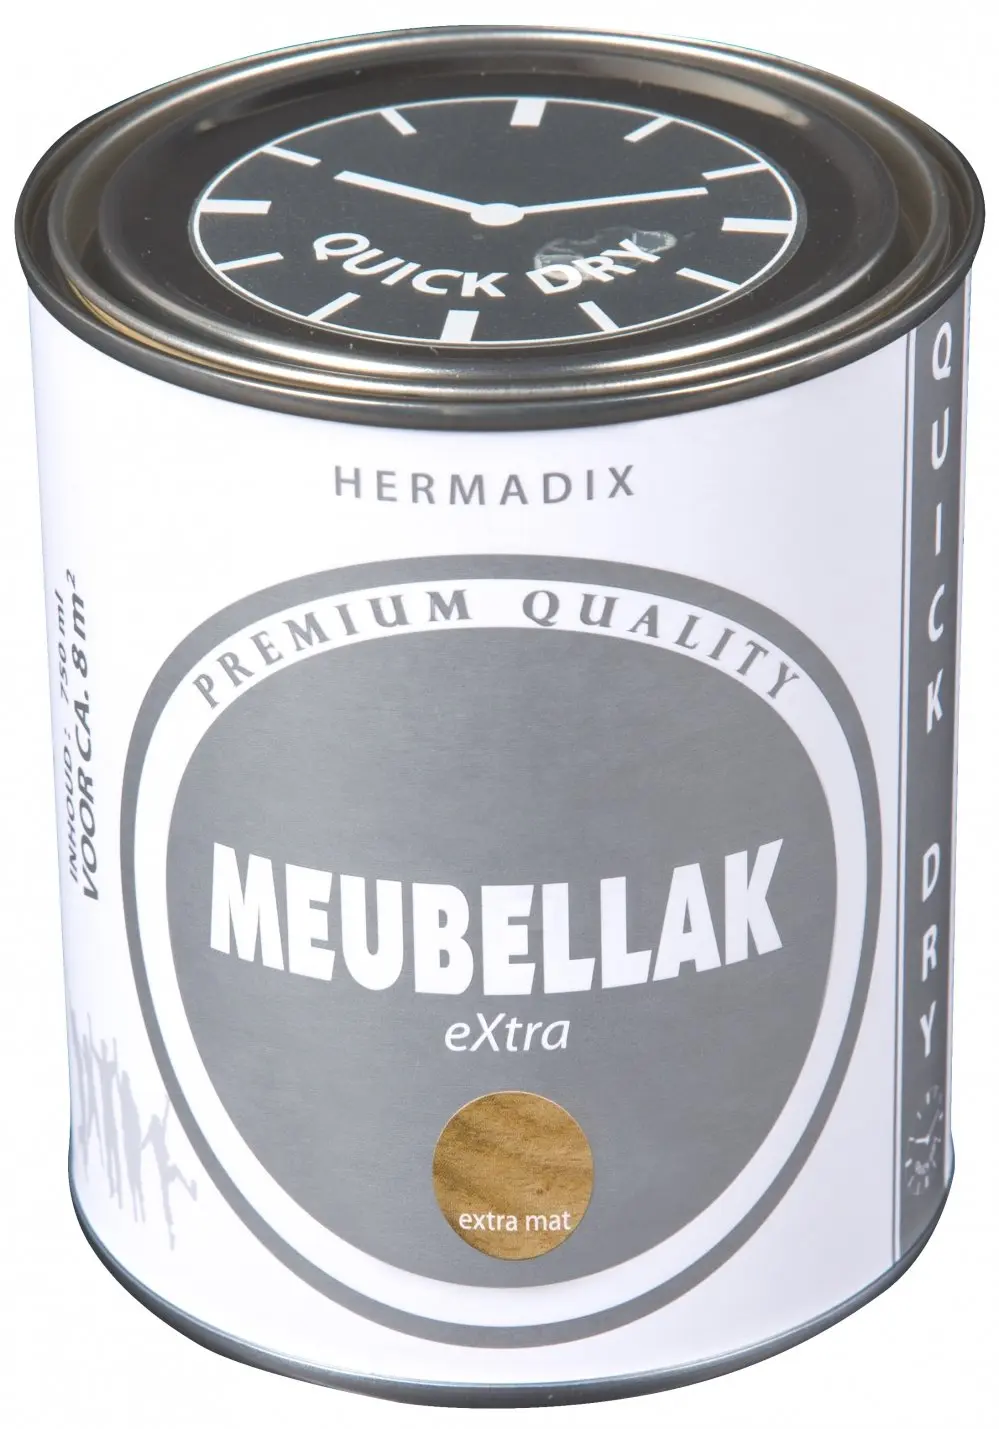 Hermadix-Meubellak-Extra-Transparant-Extra-Mat-verfcompleet-2